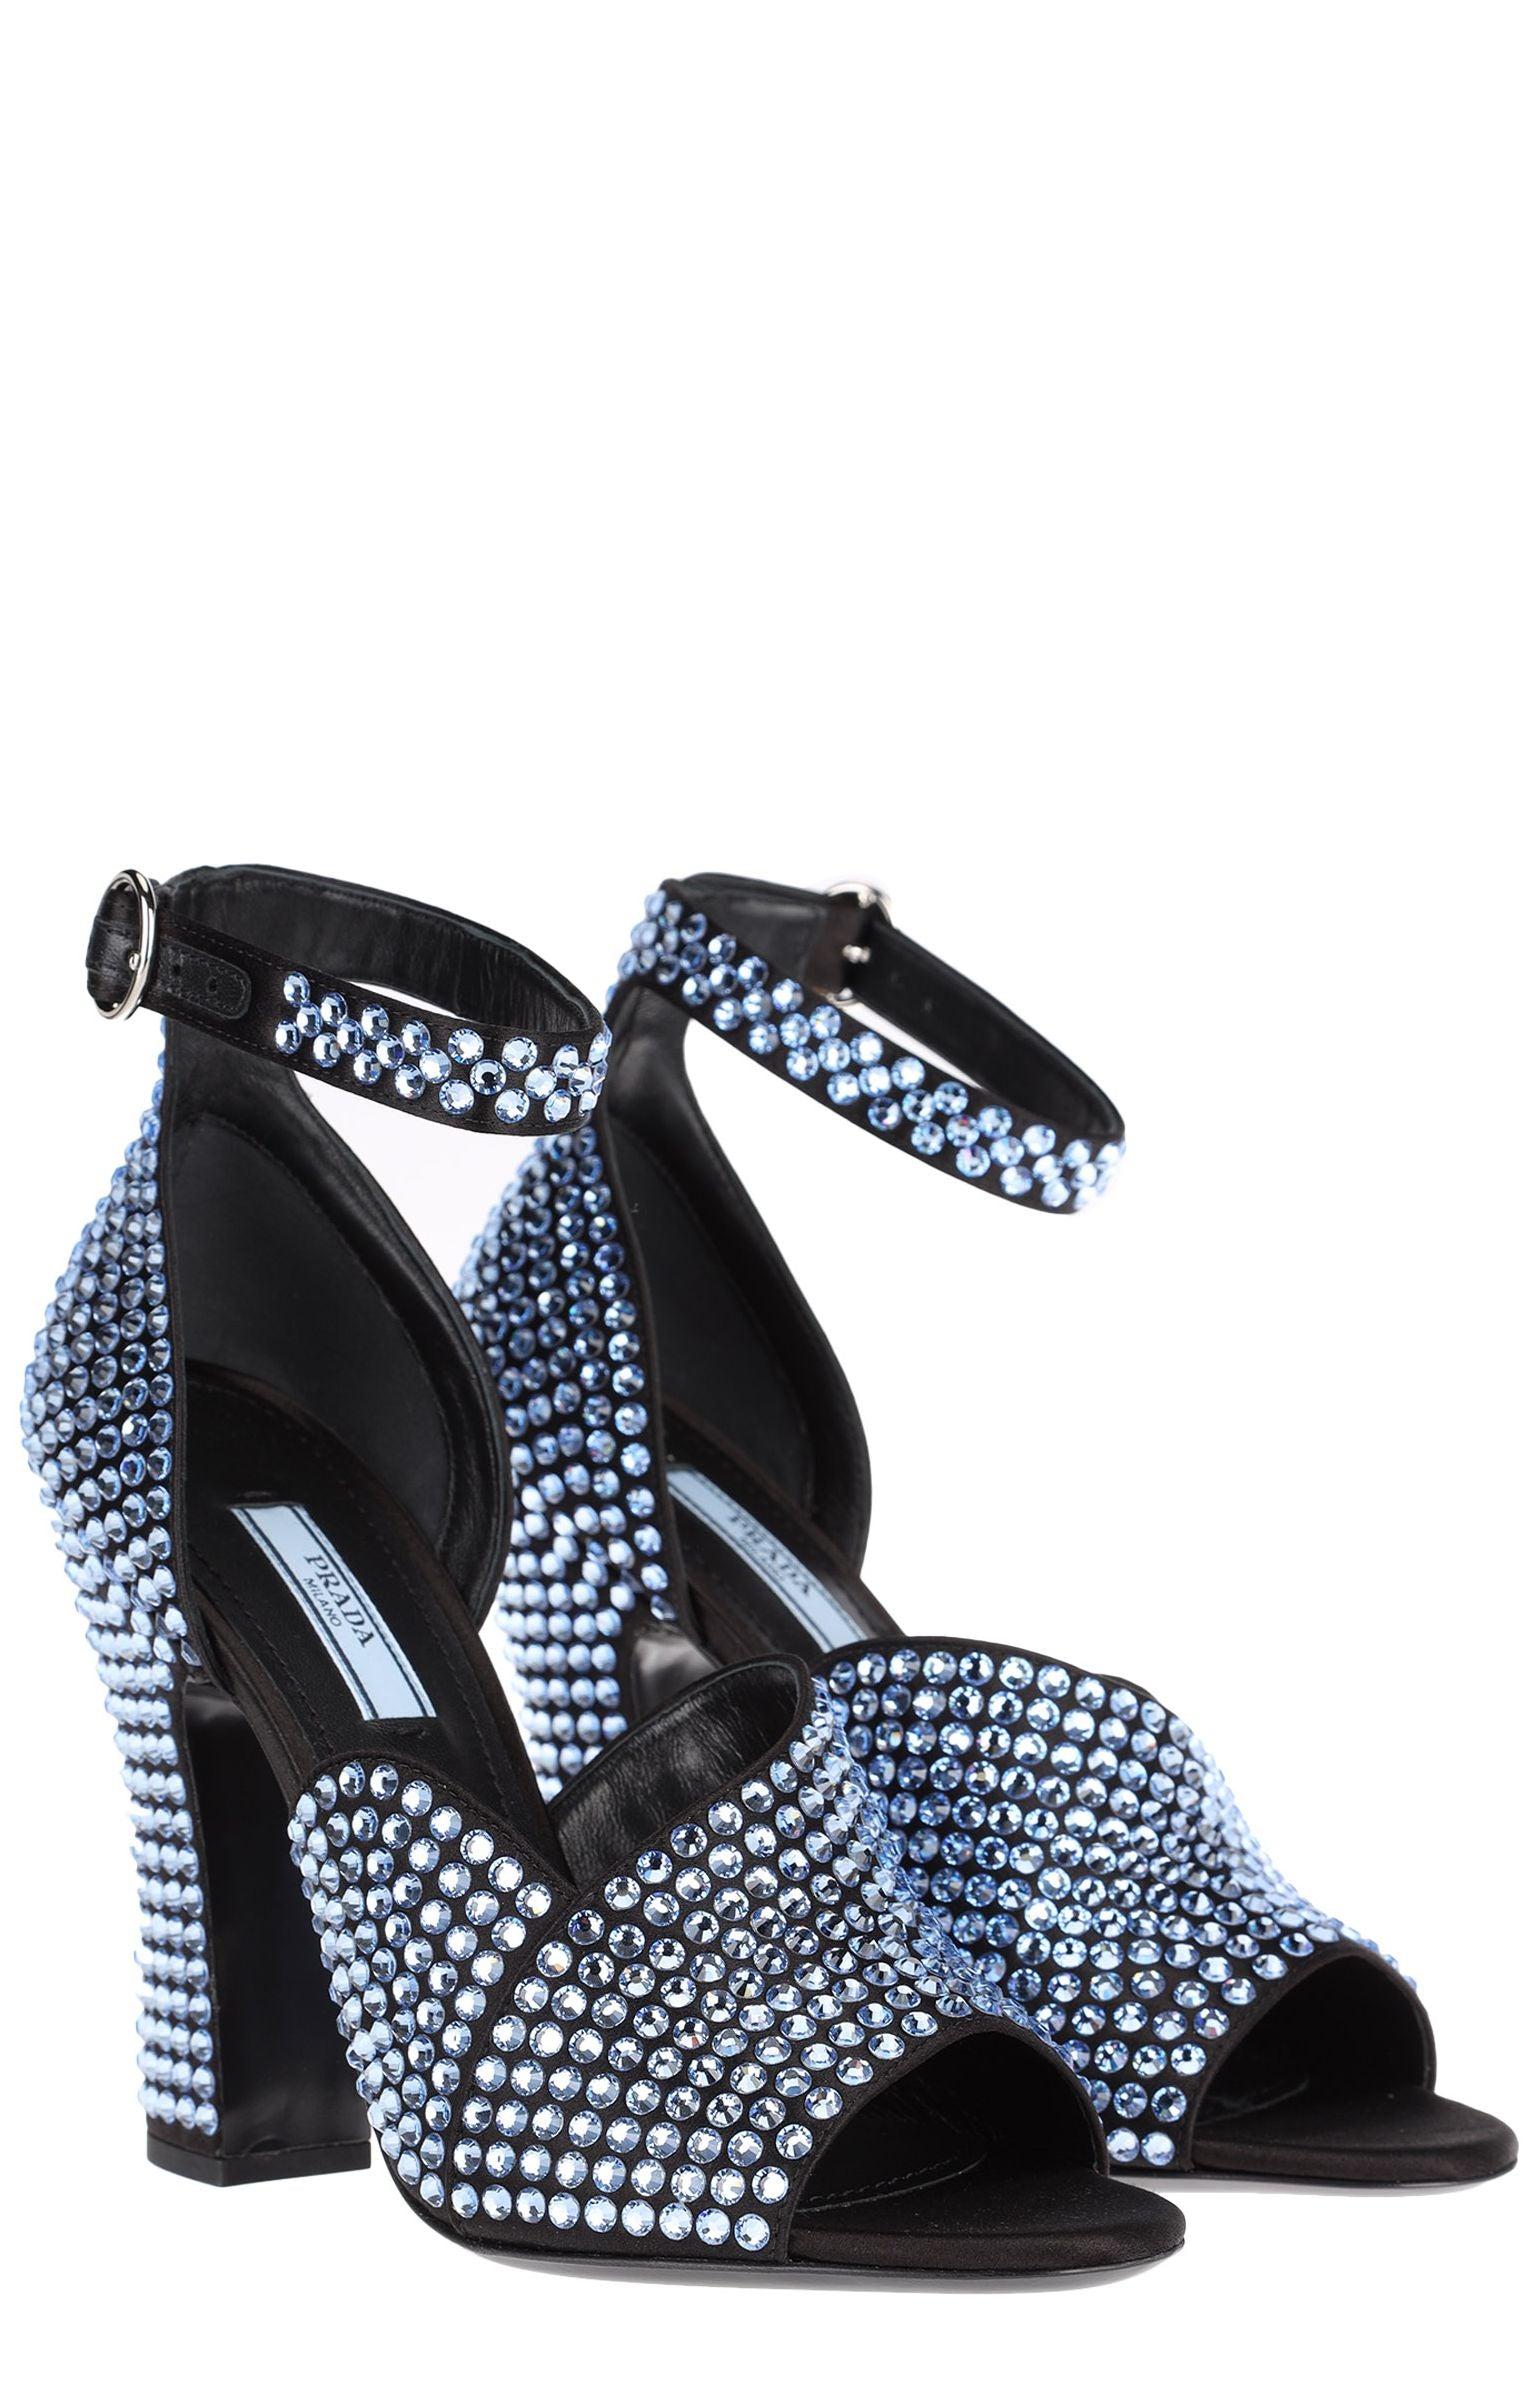 Prada Crystal-embellished Satin Sandals in Blue - Save 47% - Lyst